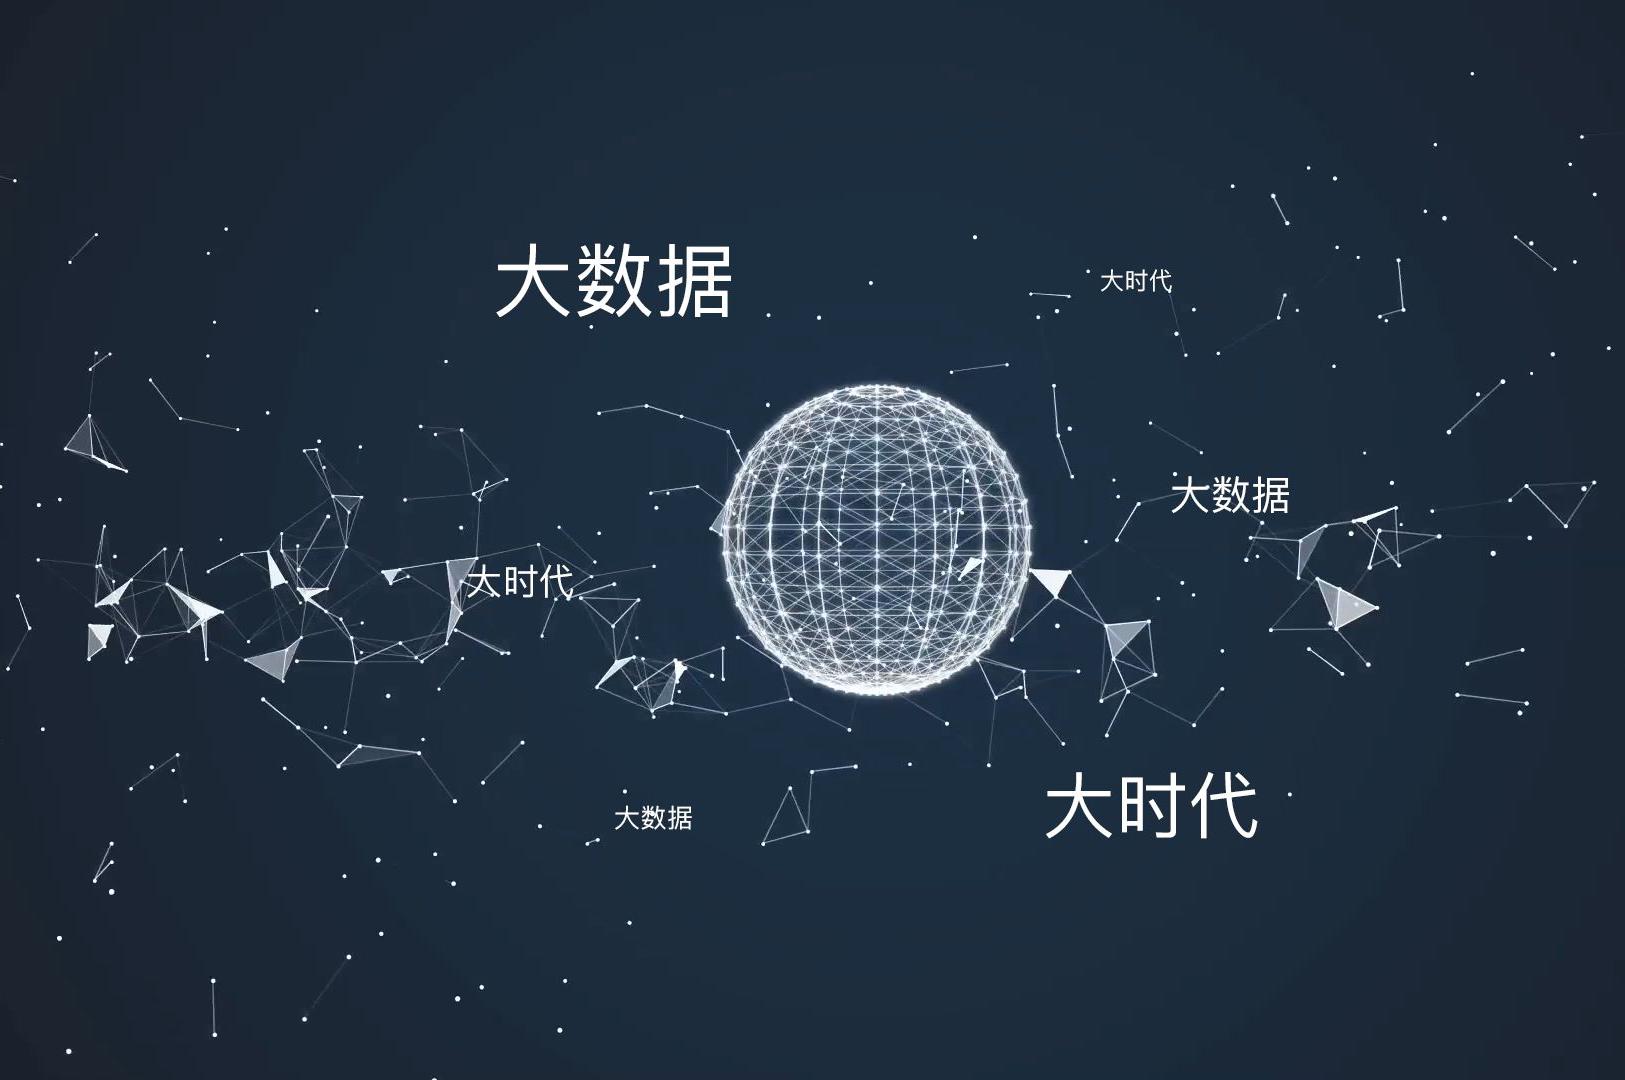 渝北:打造中国大数据产业生态谷